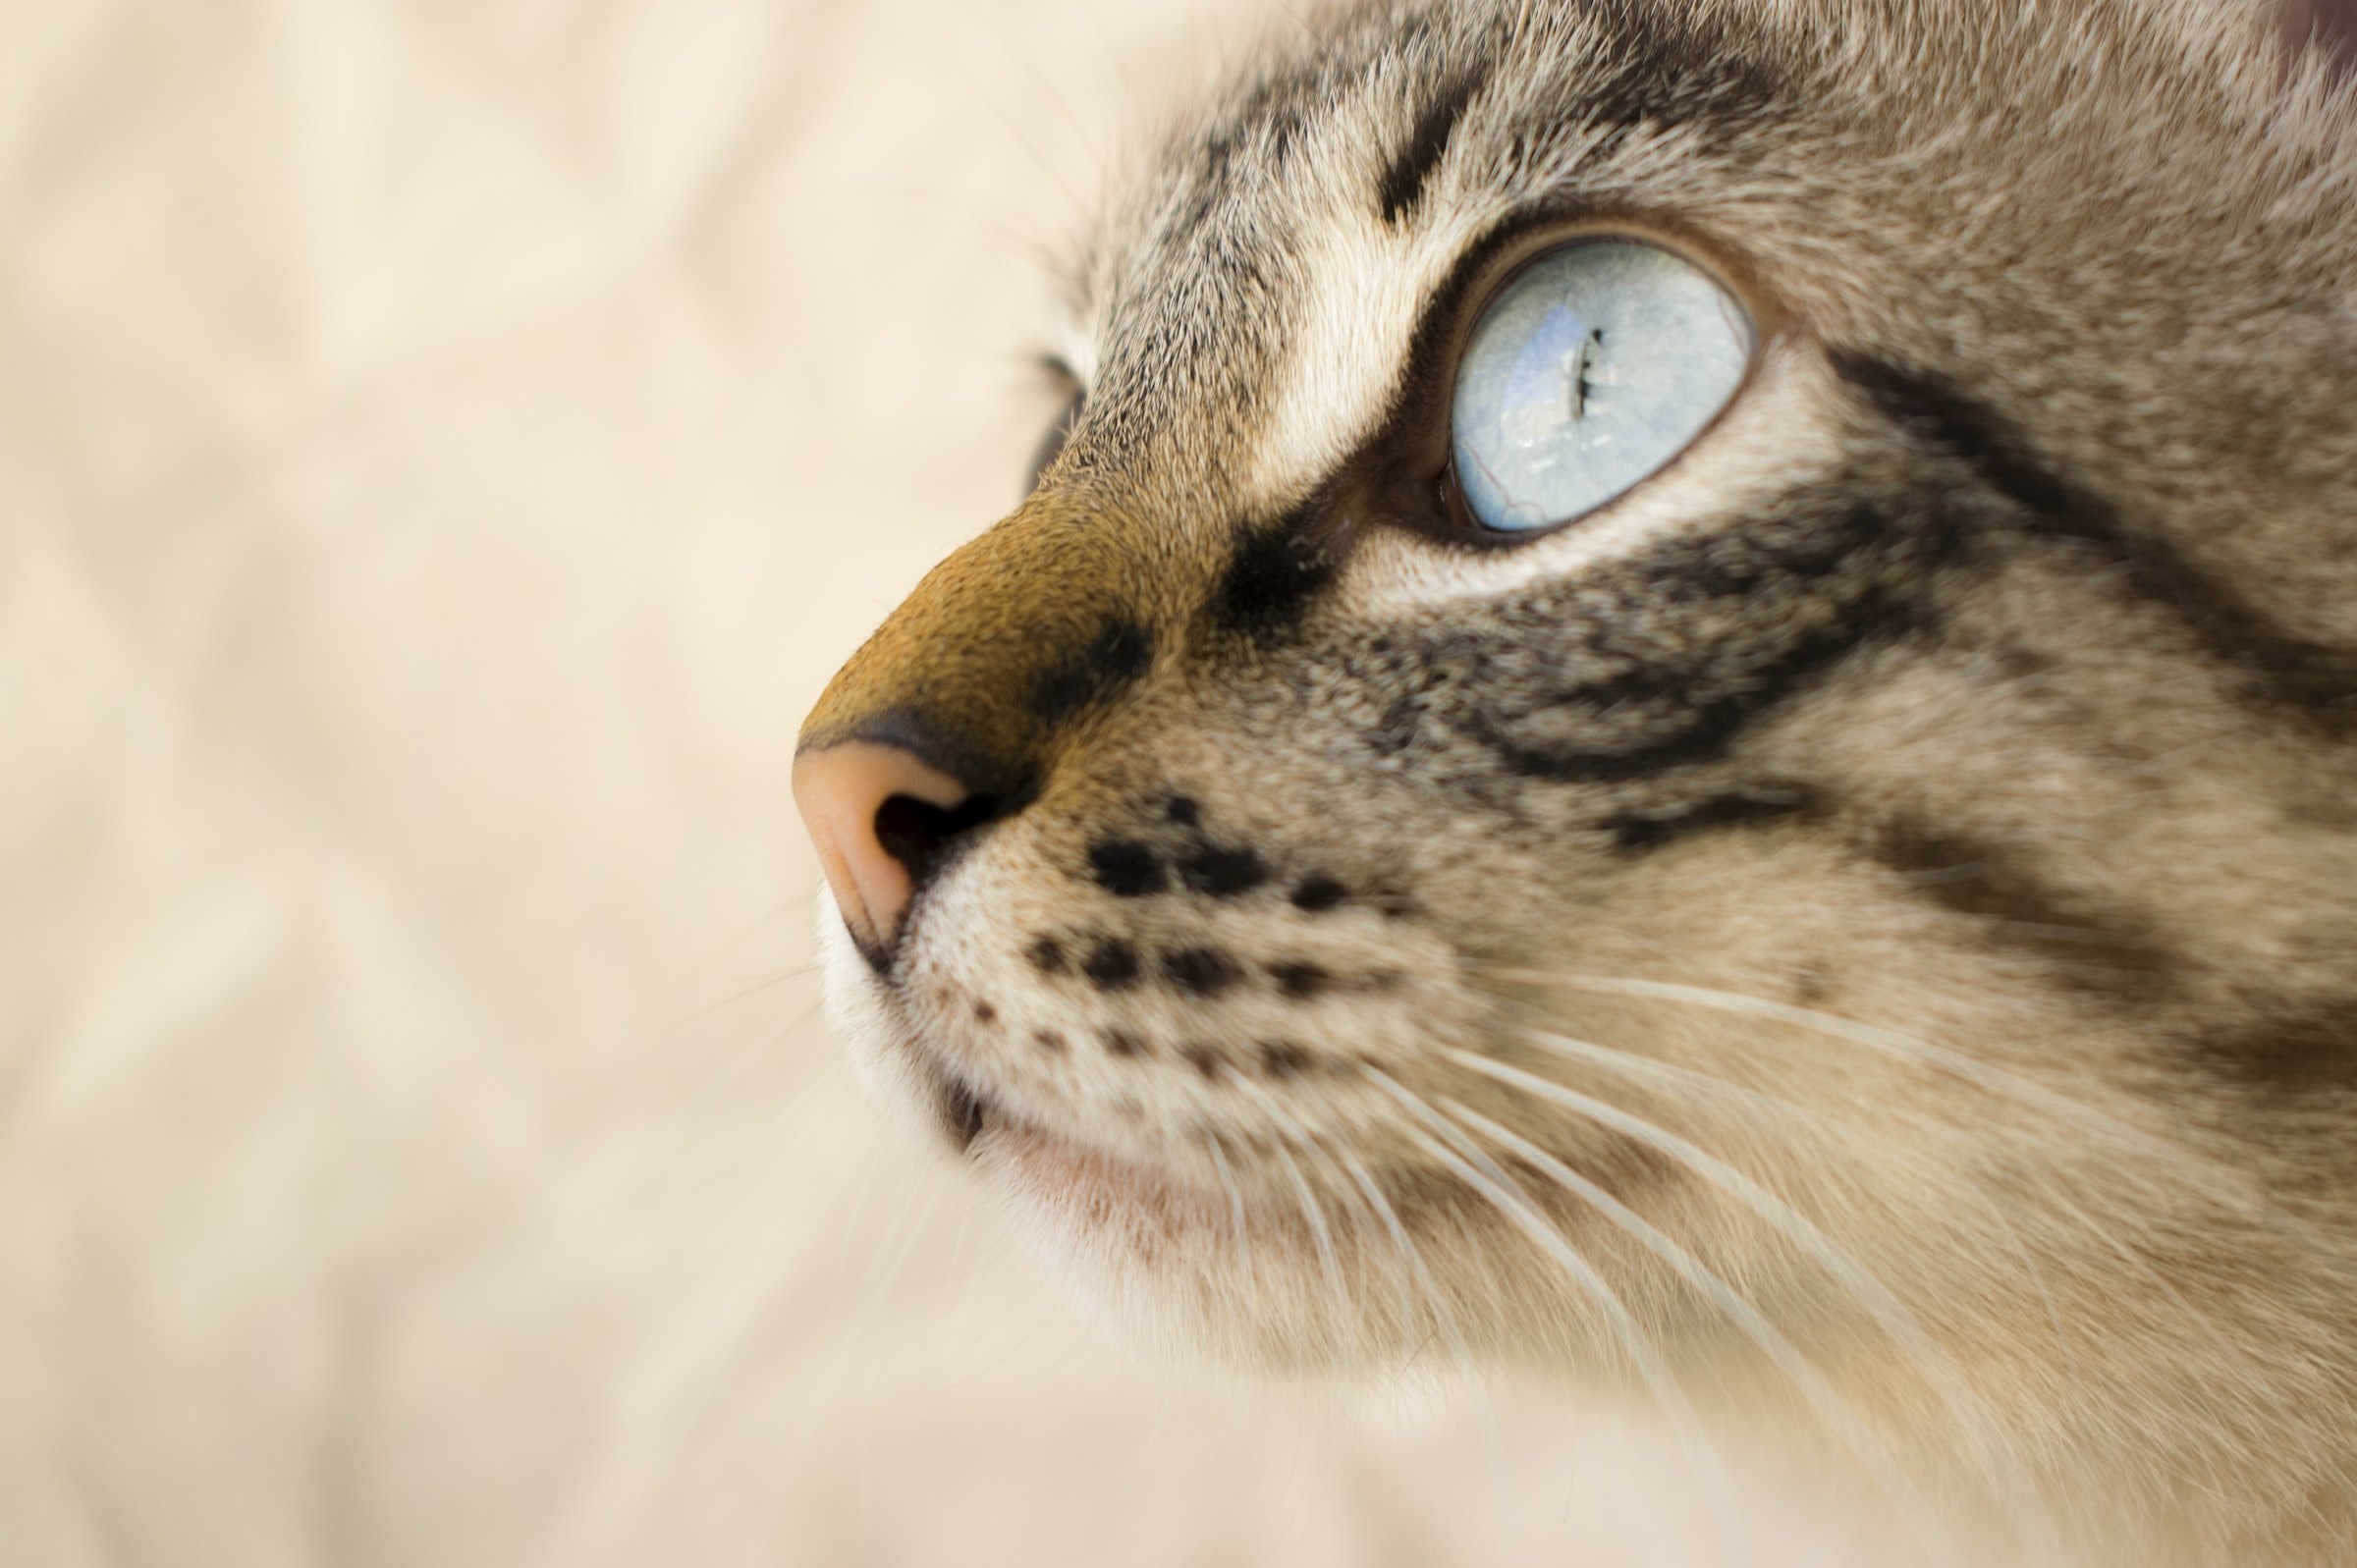 Когда расширенные зрачки у кошки — признак заболевания